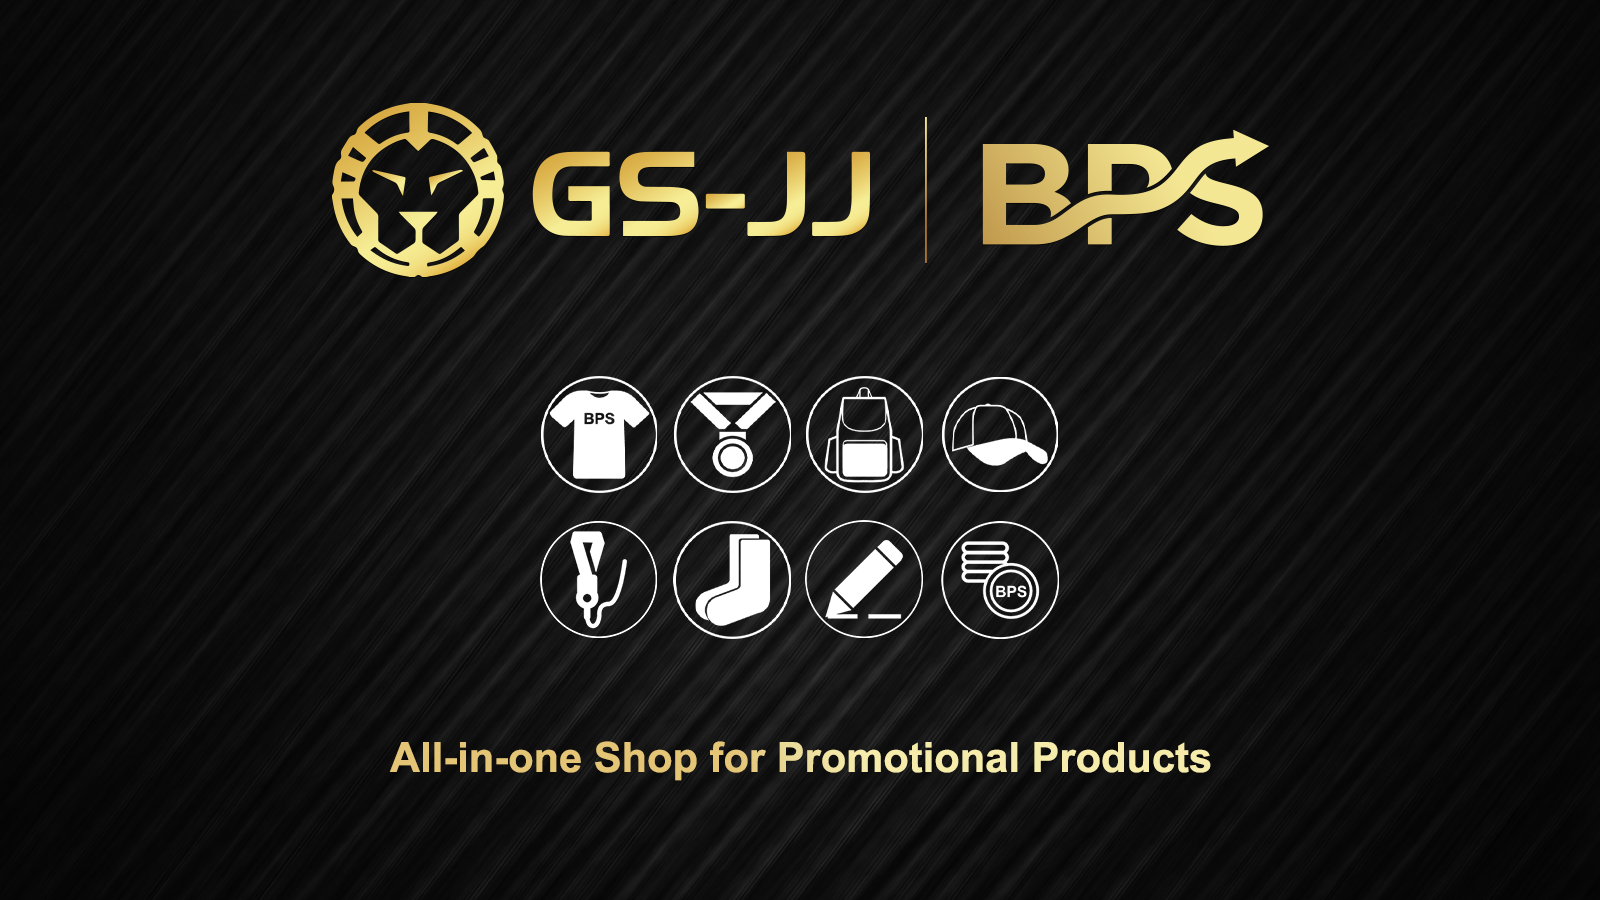 bps+gs-jj logo